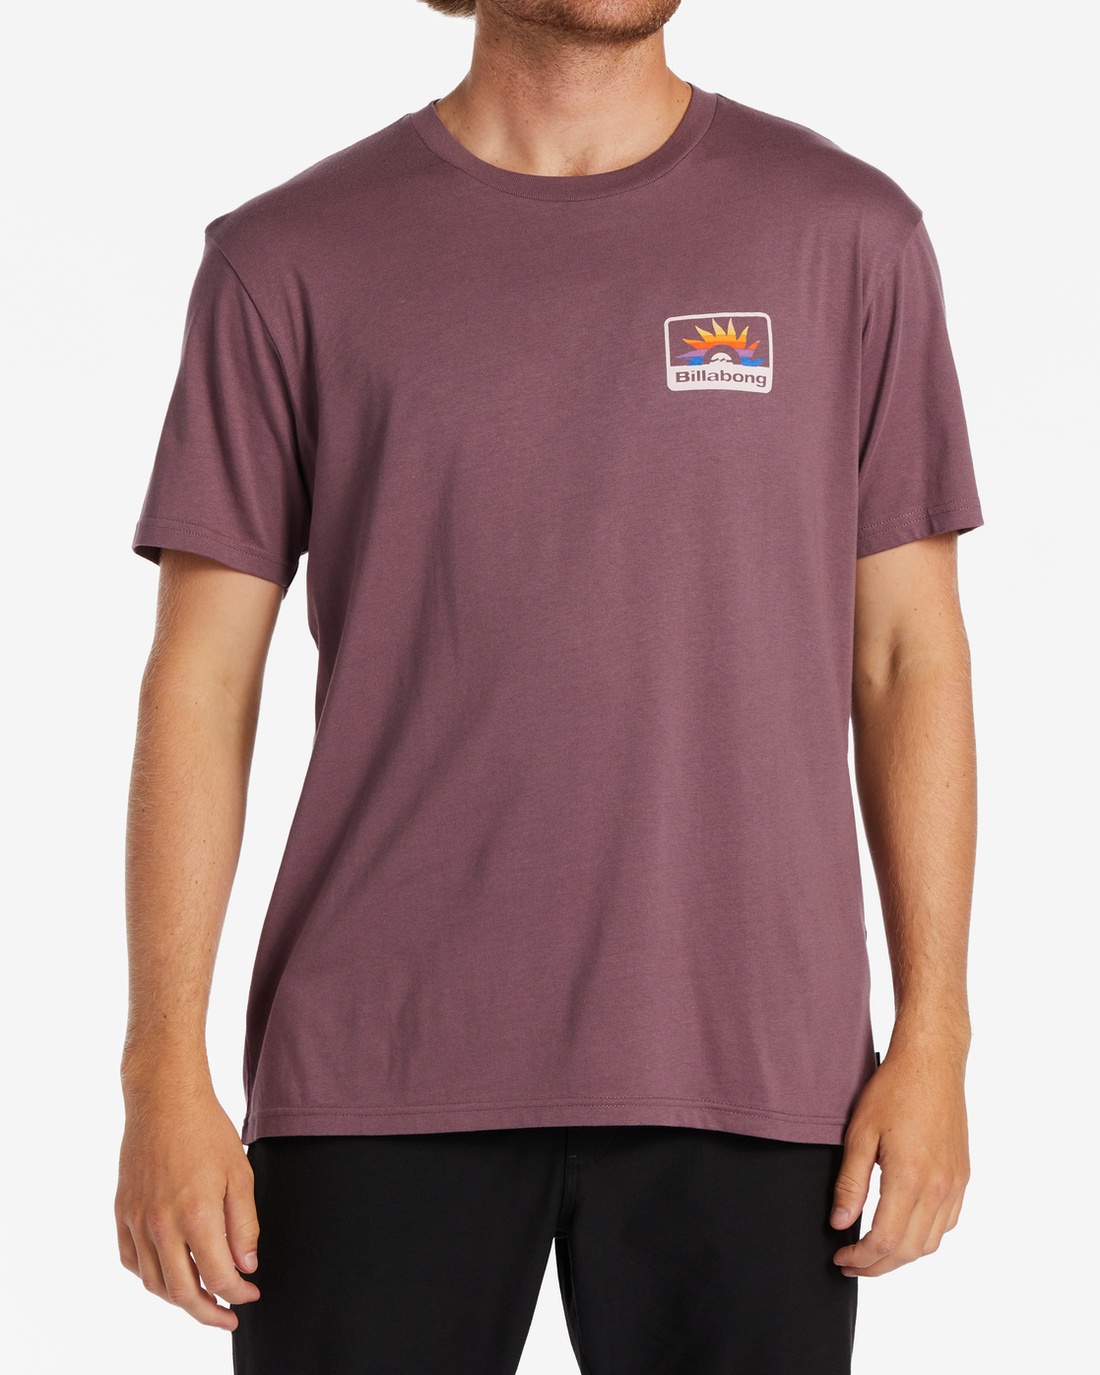 Billabong Walled T-Shirt